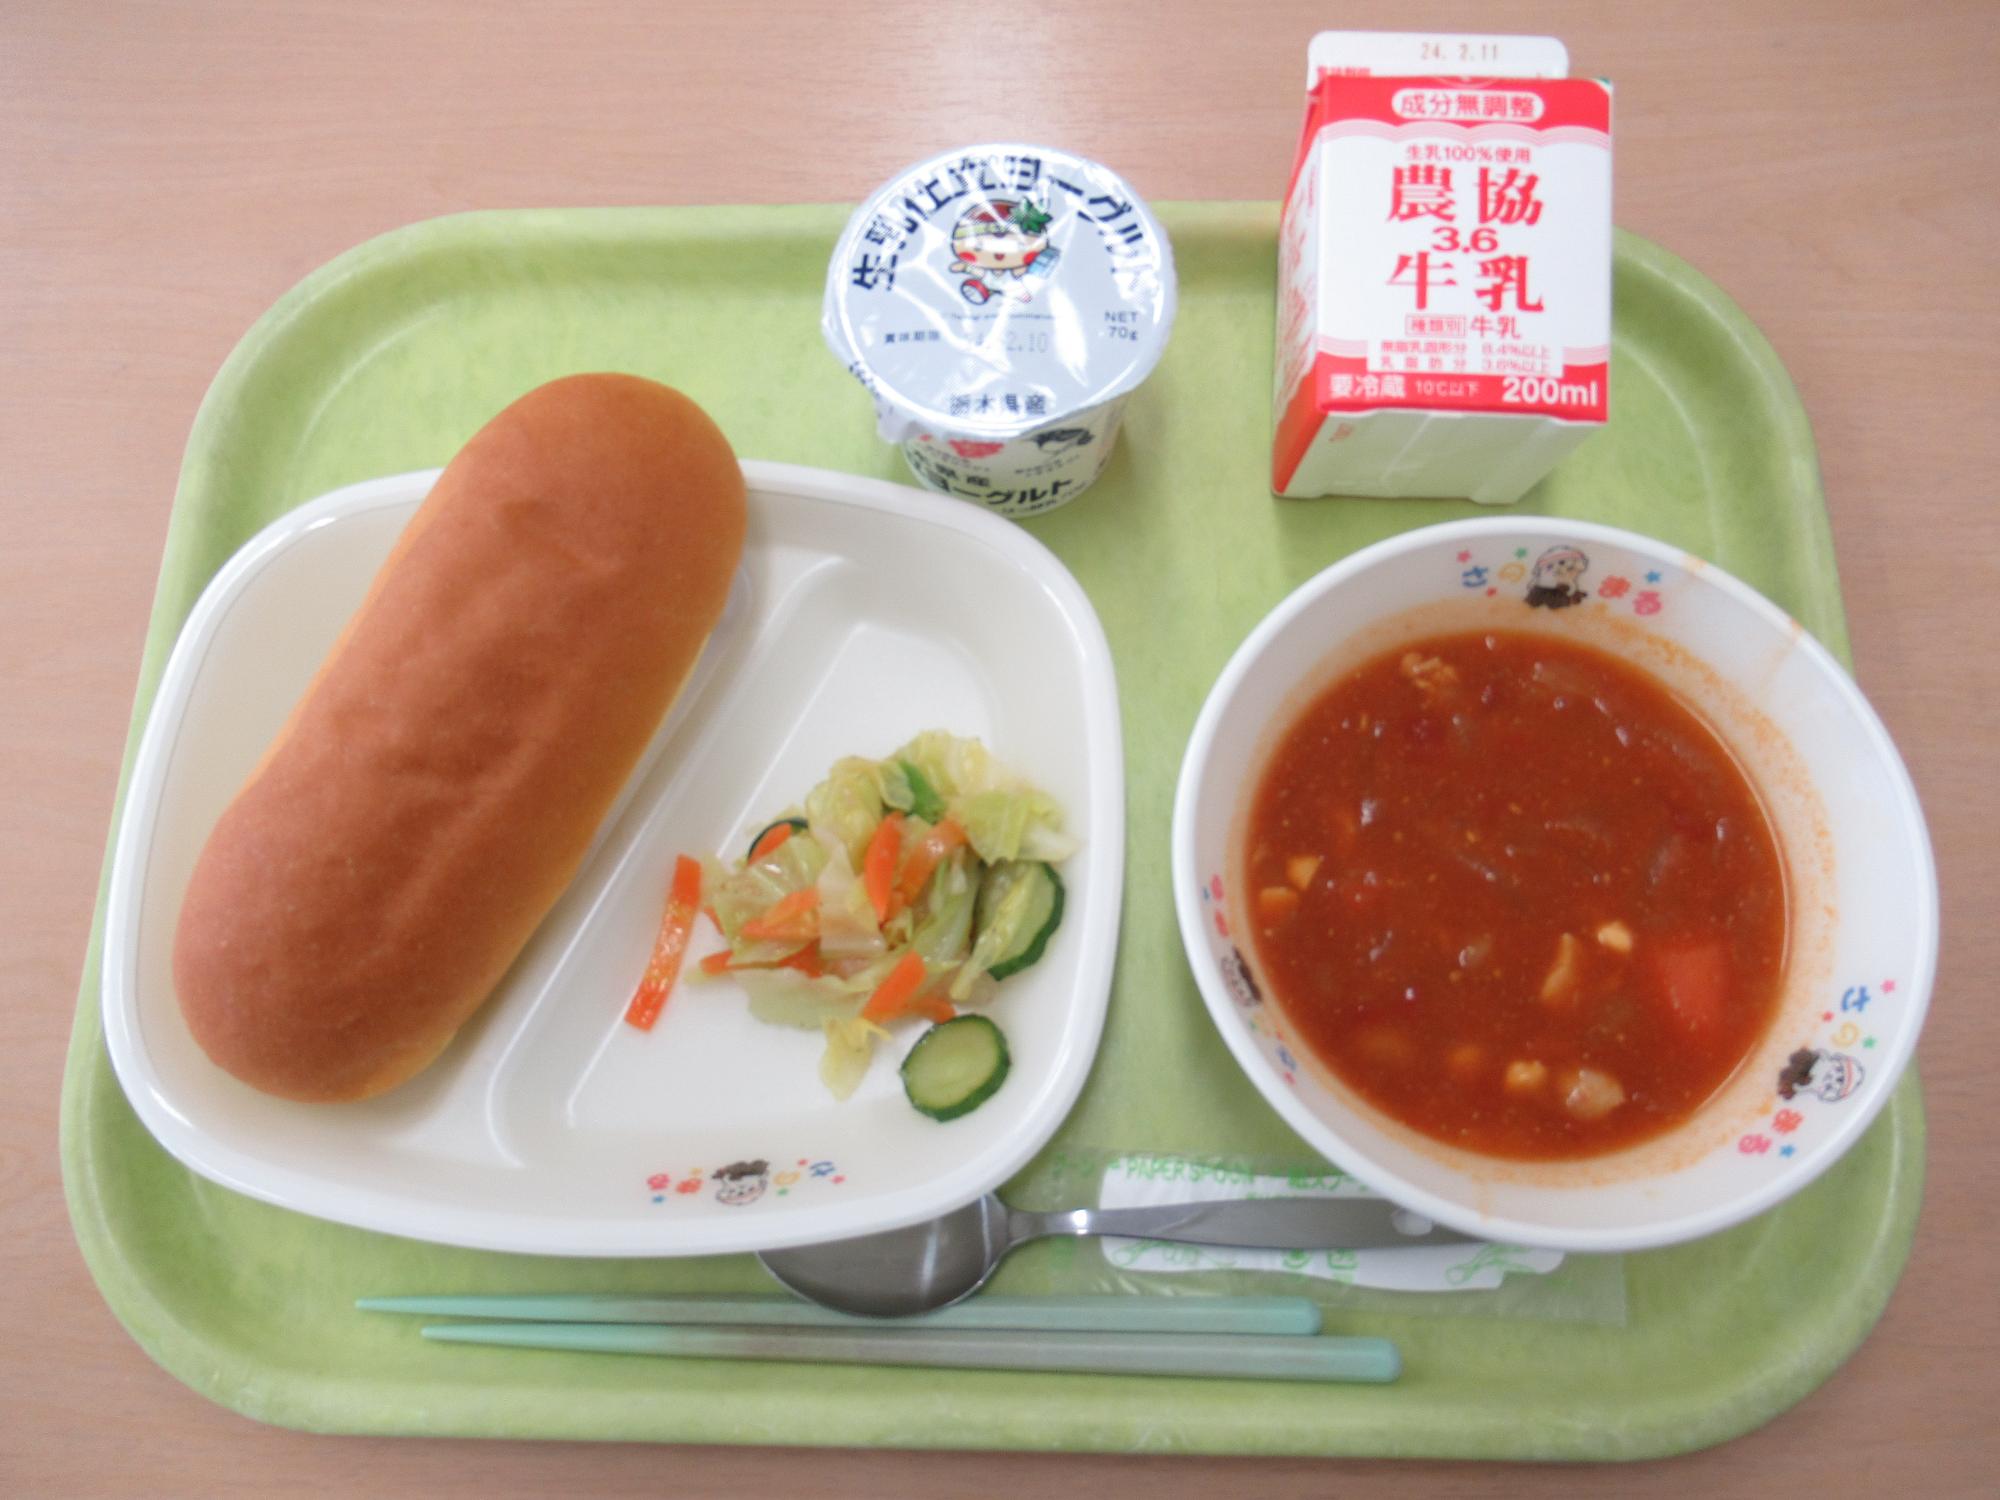 令和6年1月31日南部学校給食センター給食写真